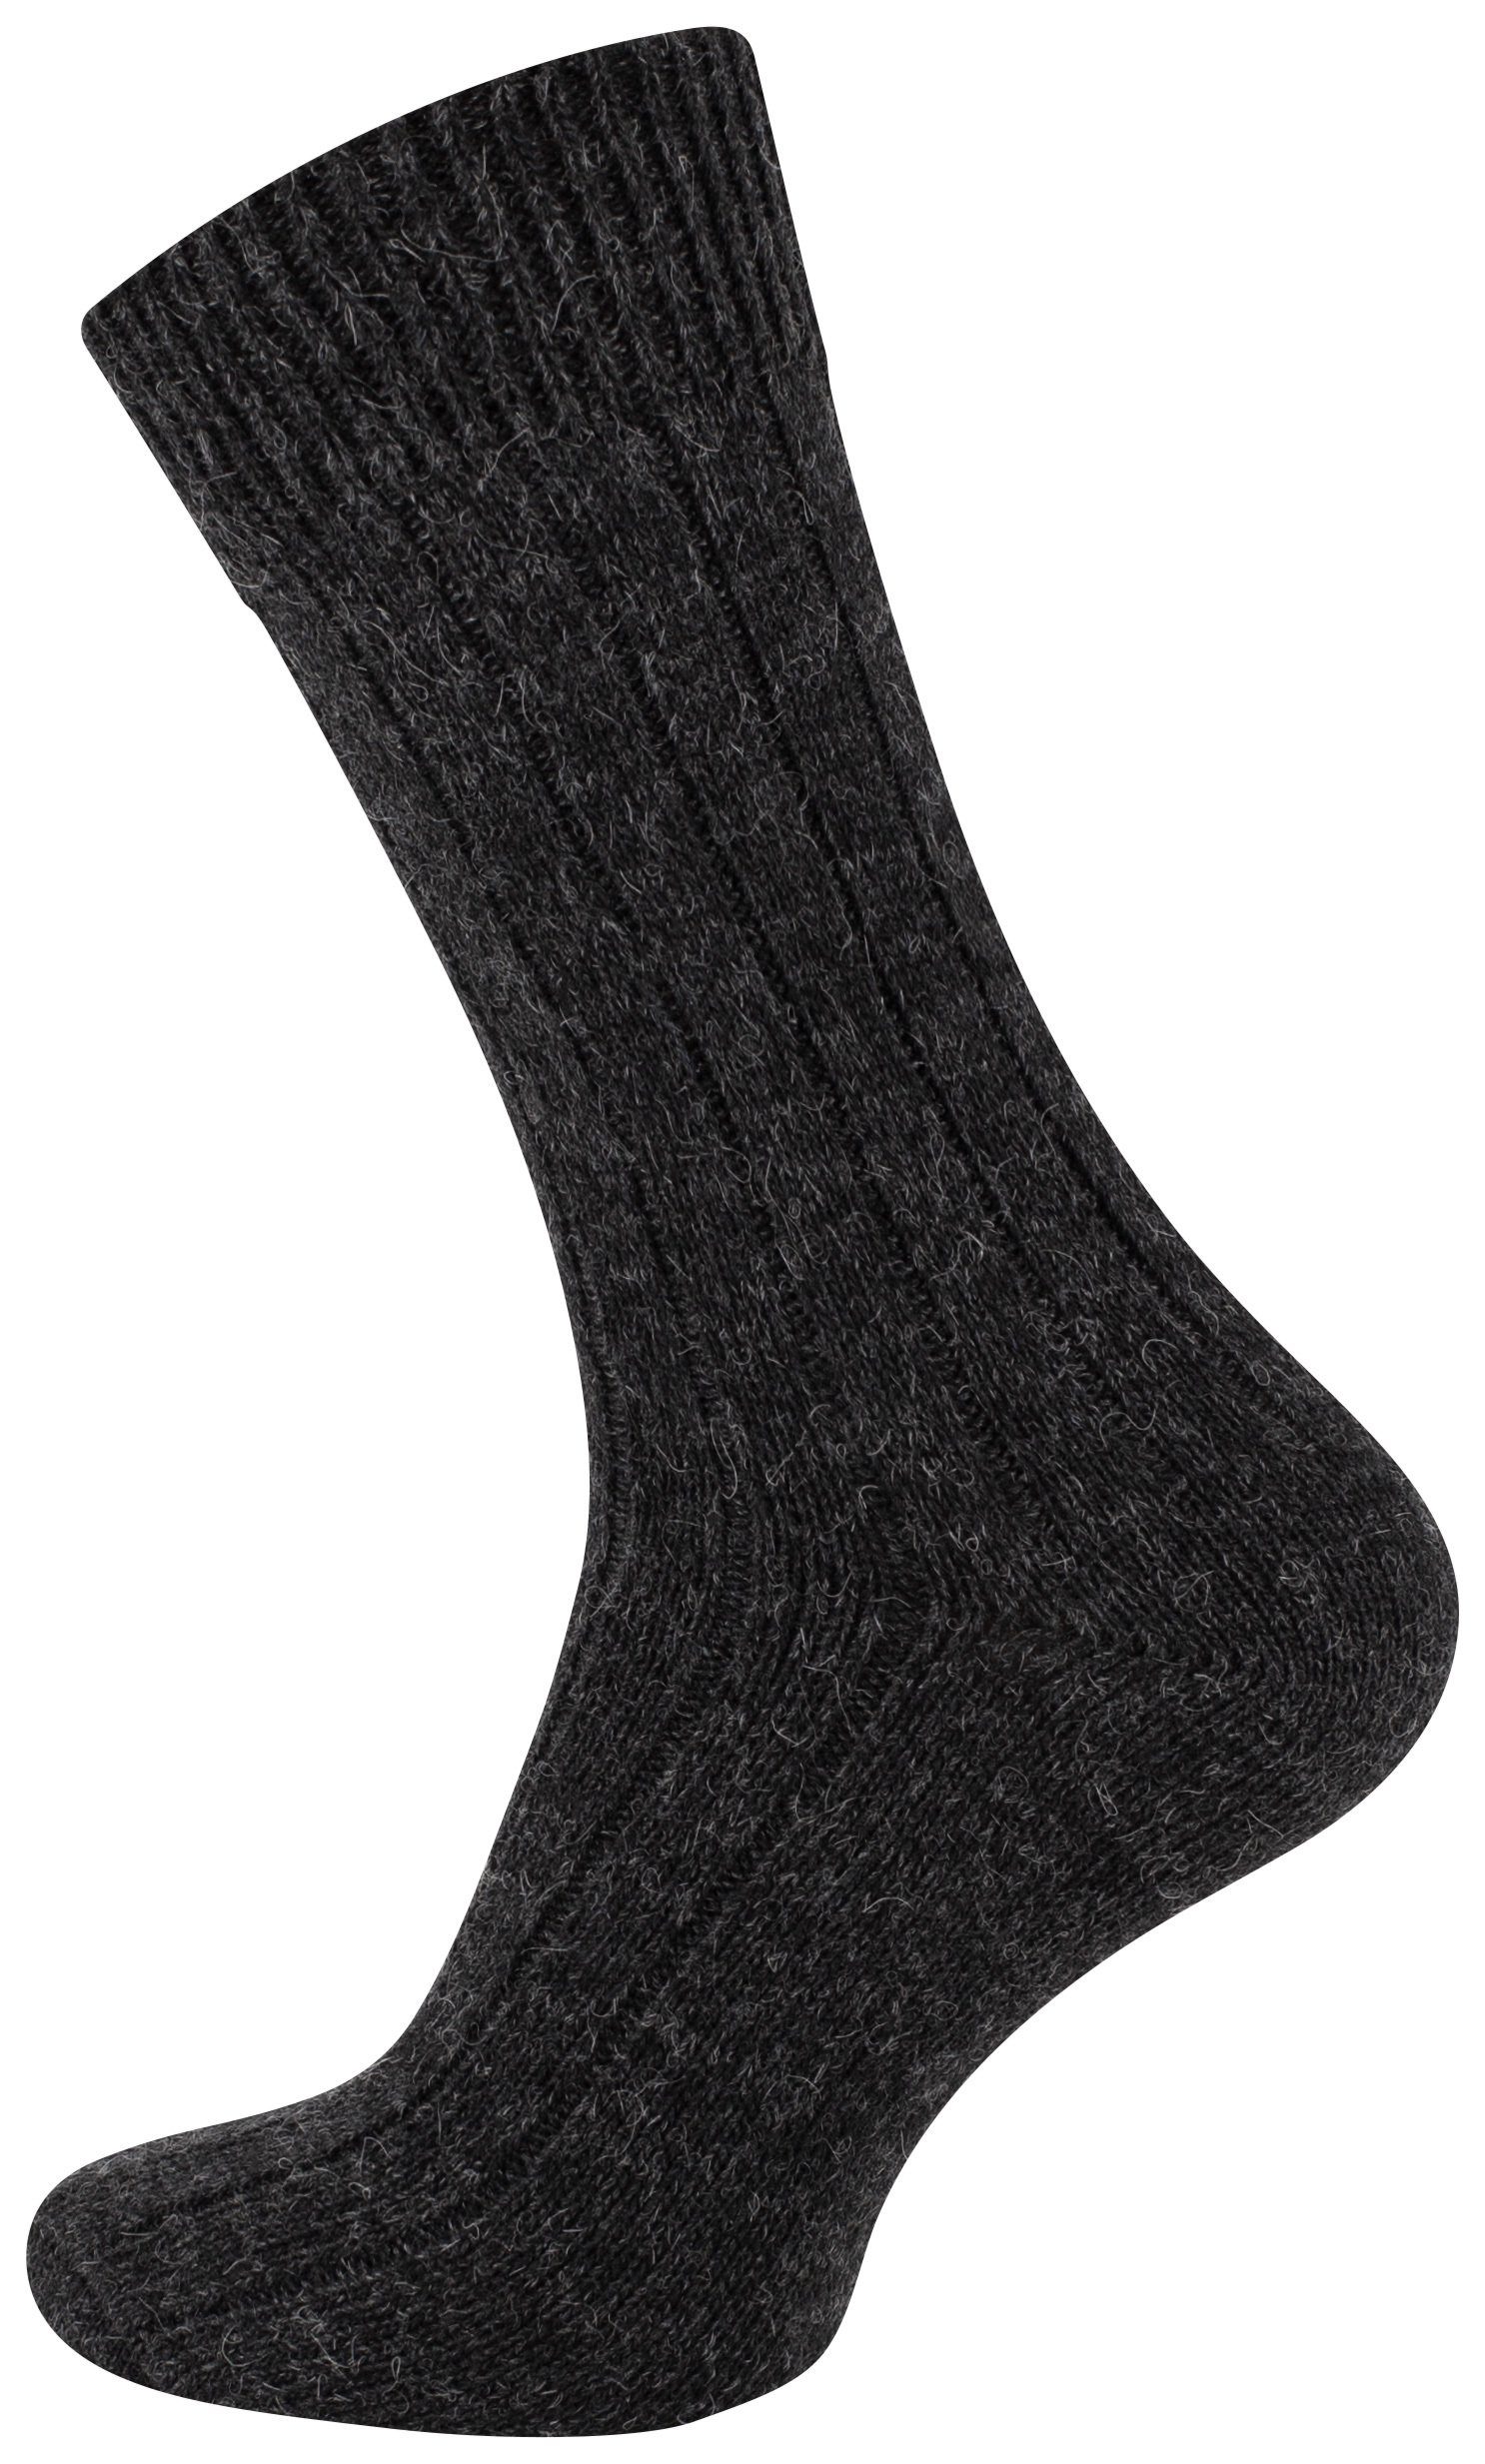 Socken Socken Cotton Prime® (2-Paar) ökologisch gefärbt Alpaka und vorgewaschen anthrazit/grau